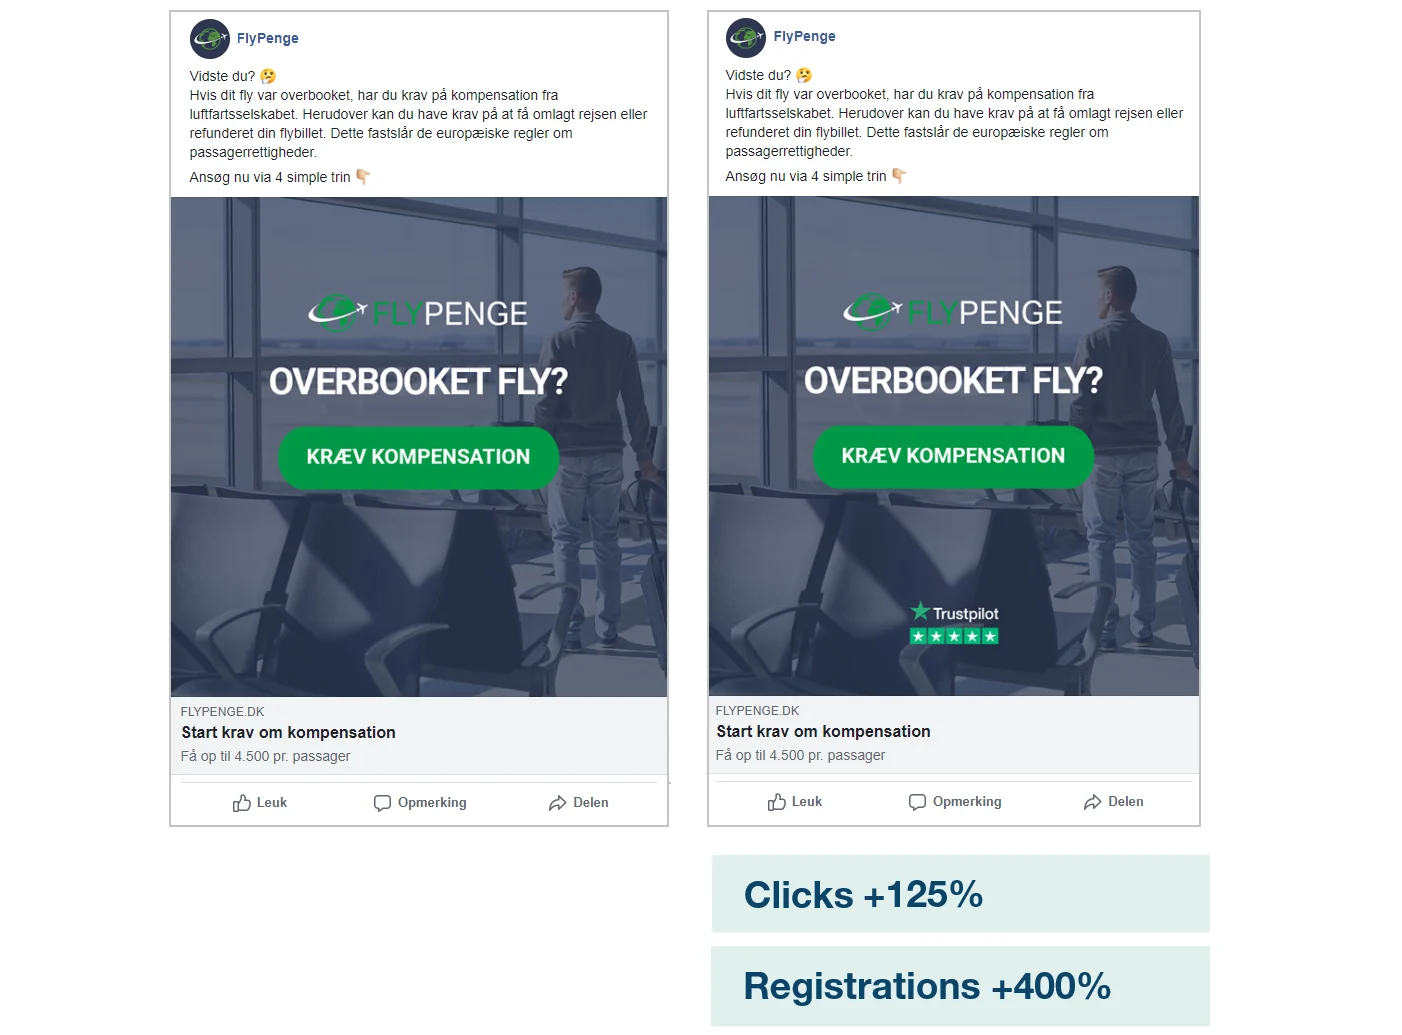 Flypenge.dk utilizza la riprova sociale per migliorare le prestazioni degli annunci